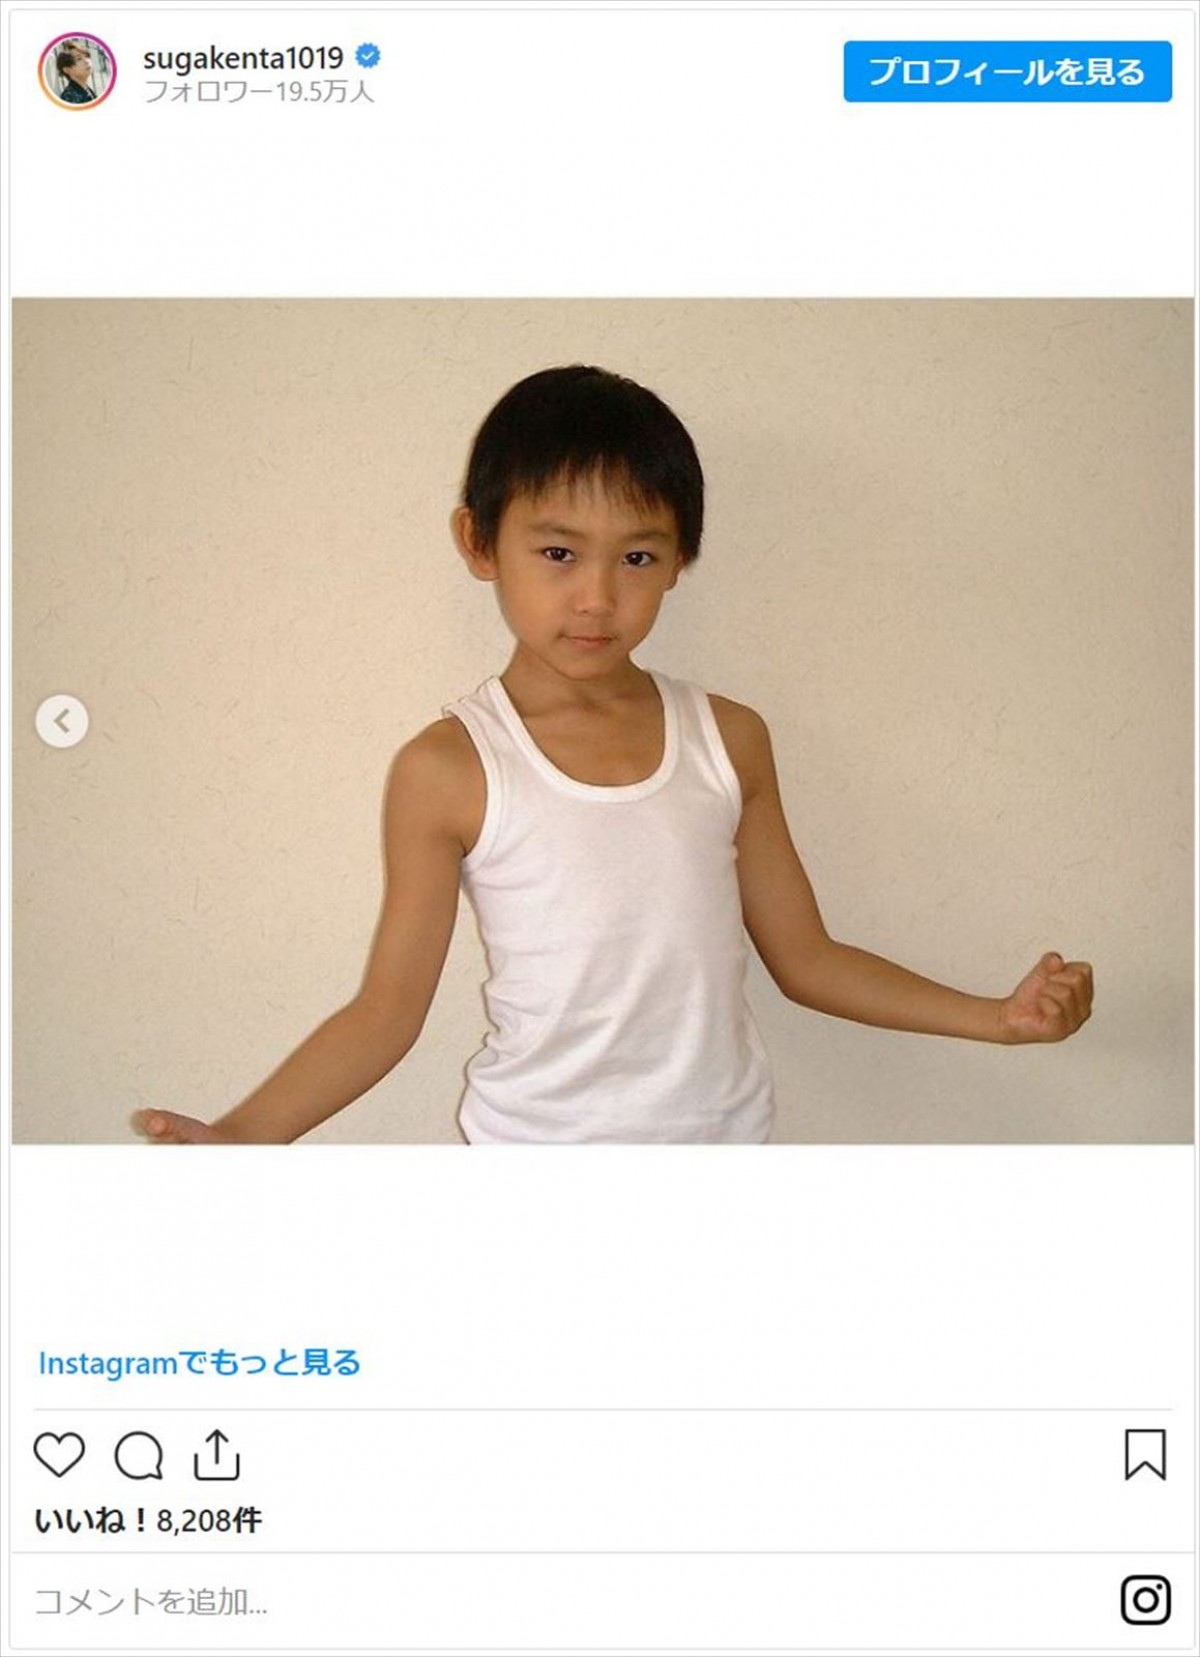 須賀健太28歳に　子役時代の姿に「変わらない童顔」「懐かしい」と反響